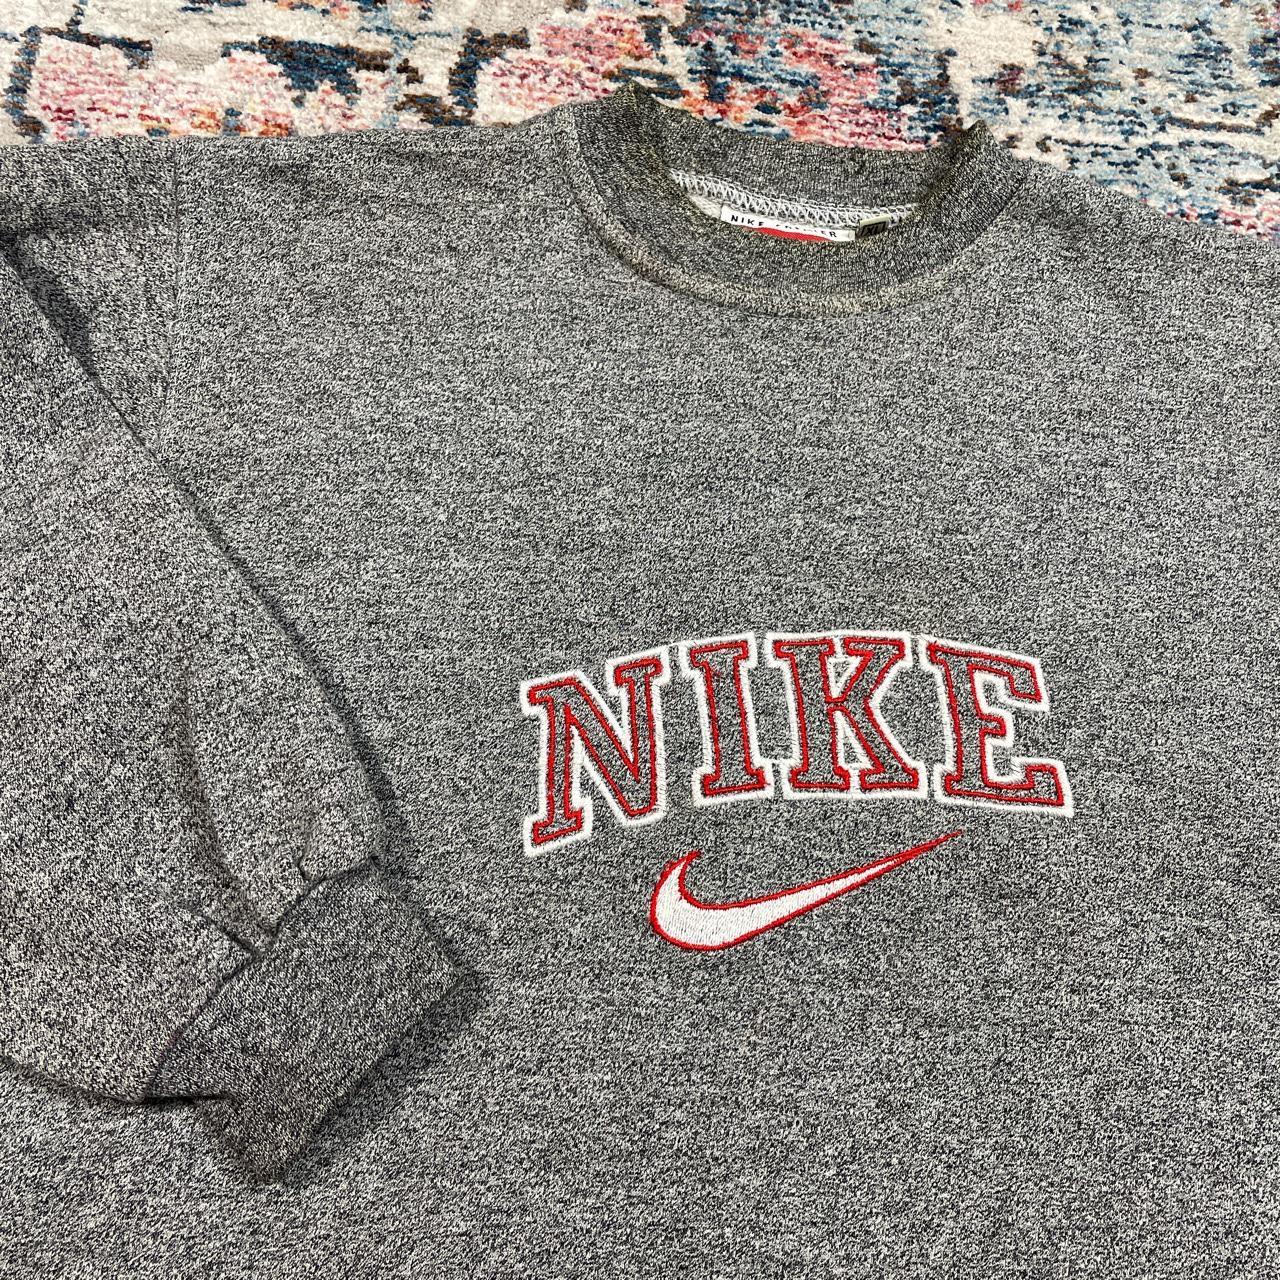 Vintage Nike Grey Spellout Sweatshirt